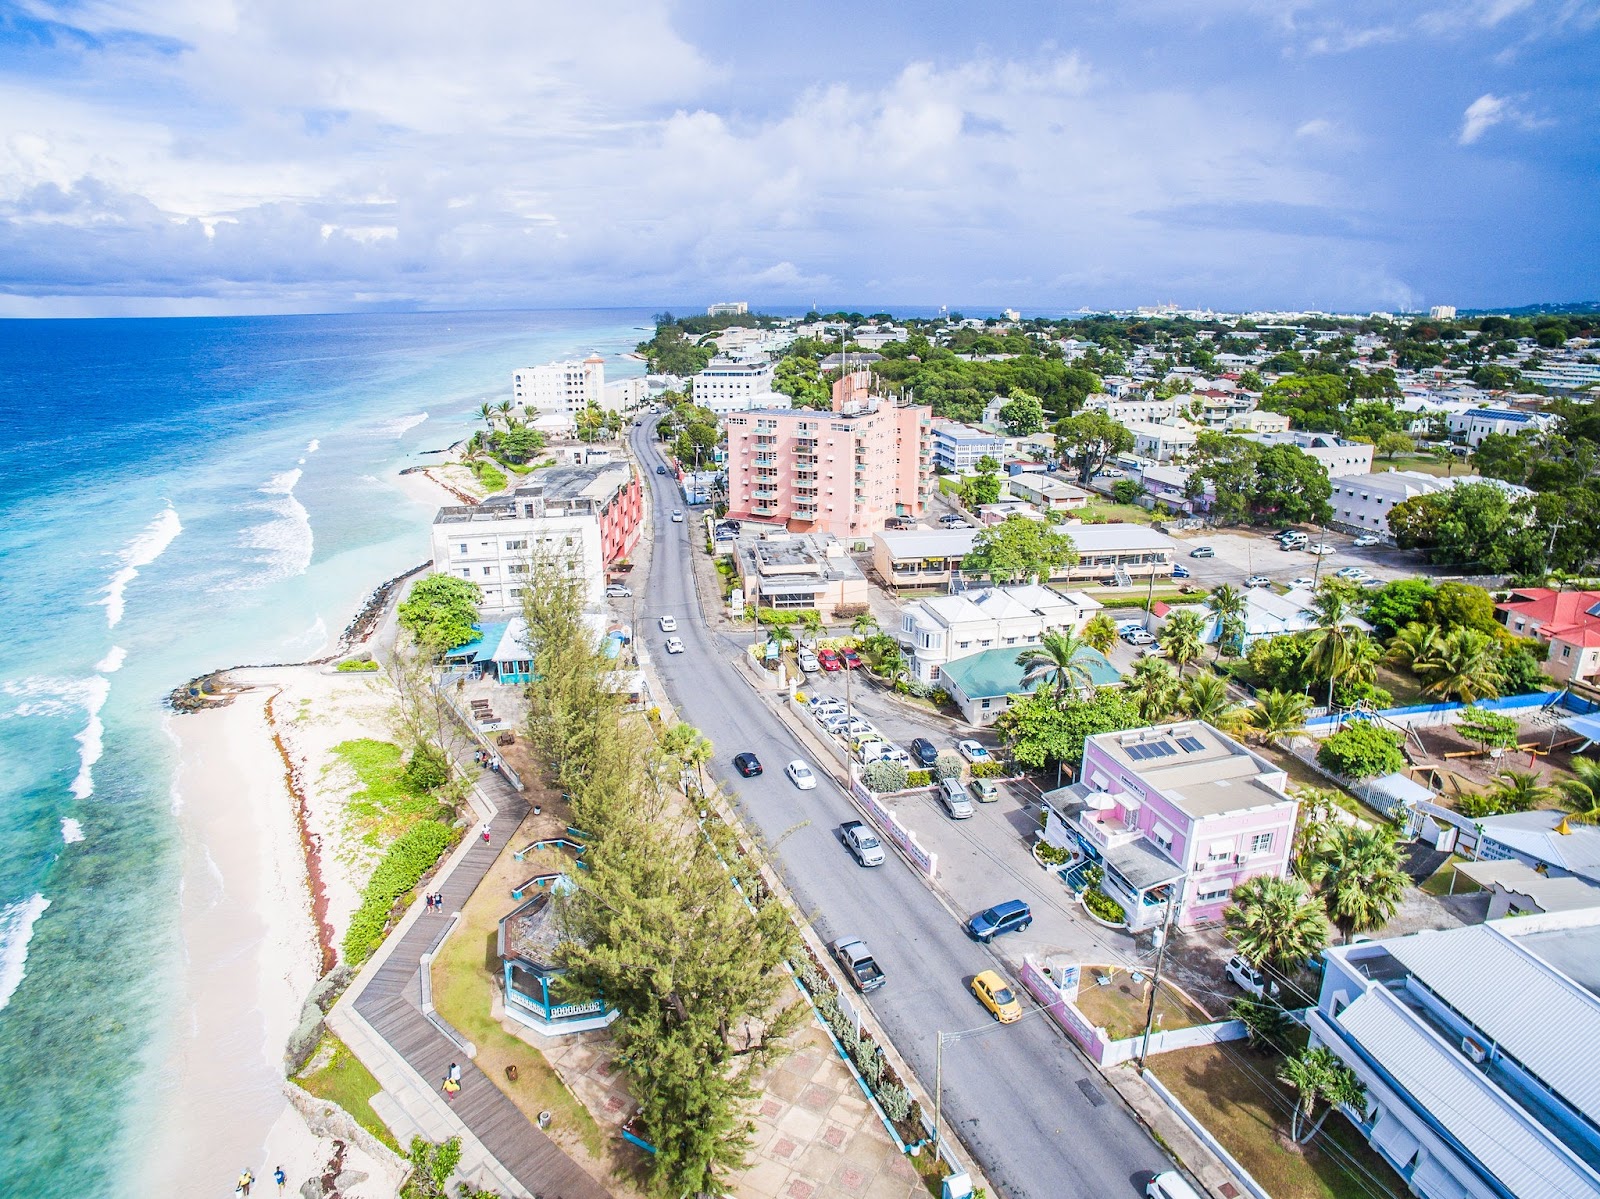 Top 10 sunny holiday destinations - Barbados